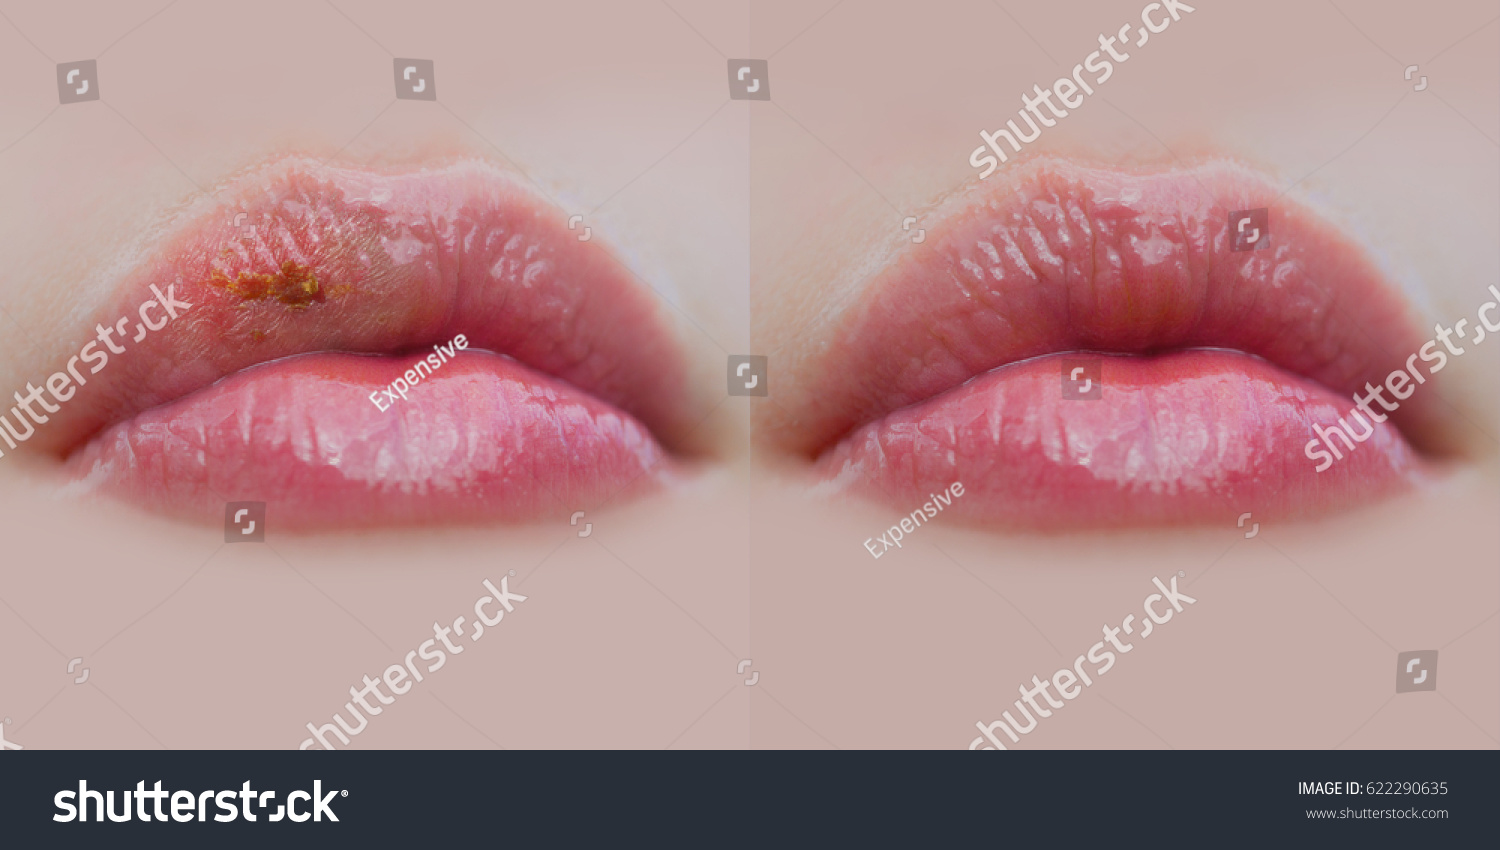 Грибковое заболевание губ